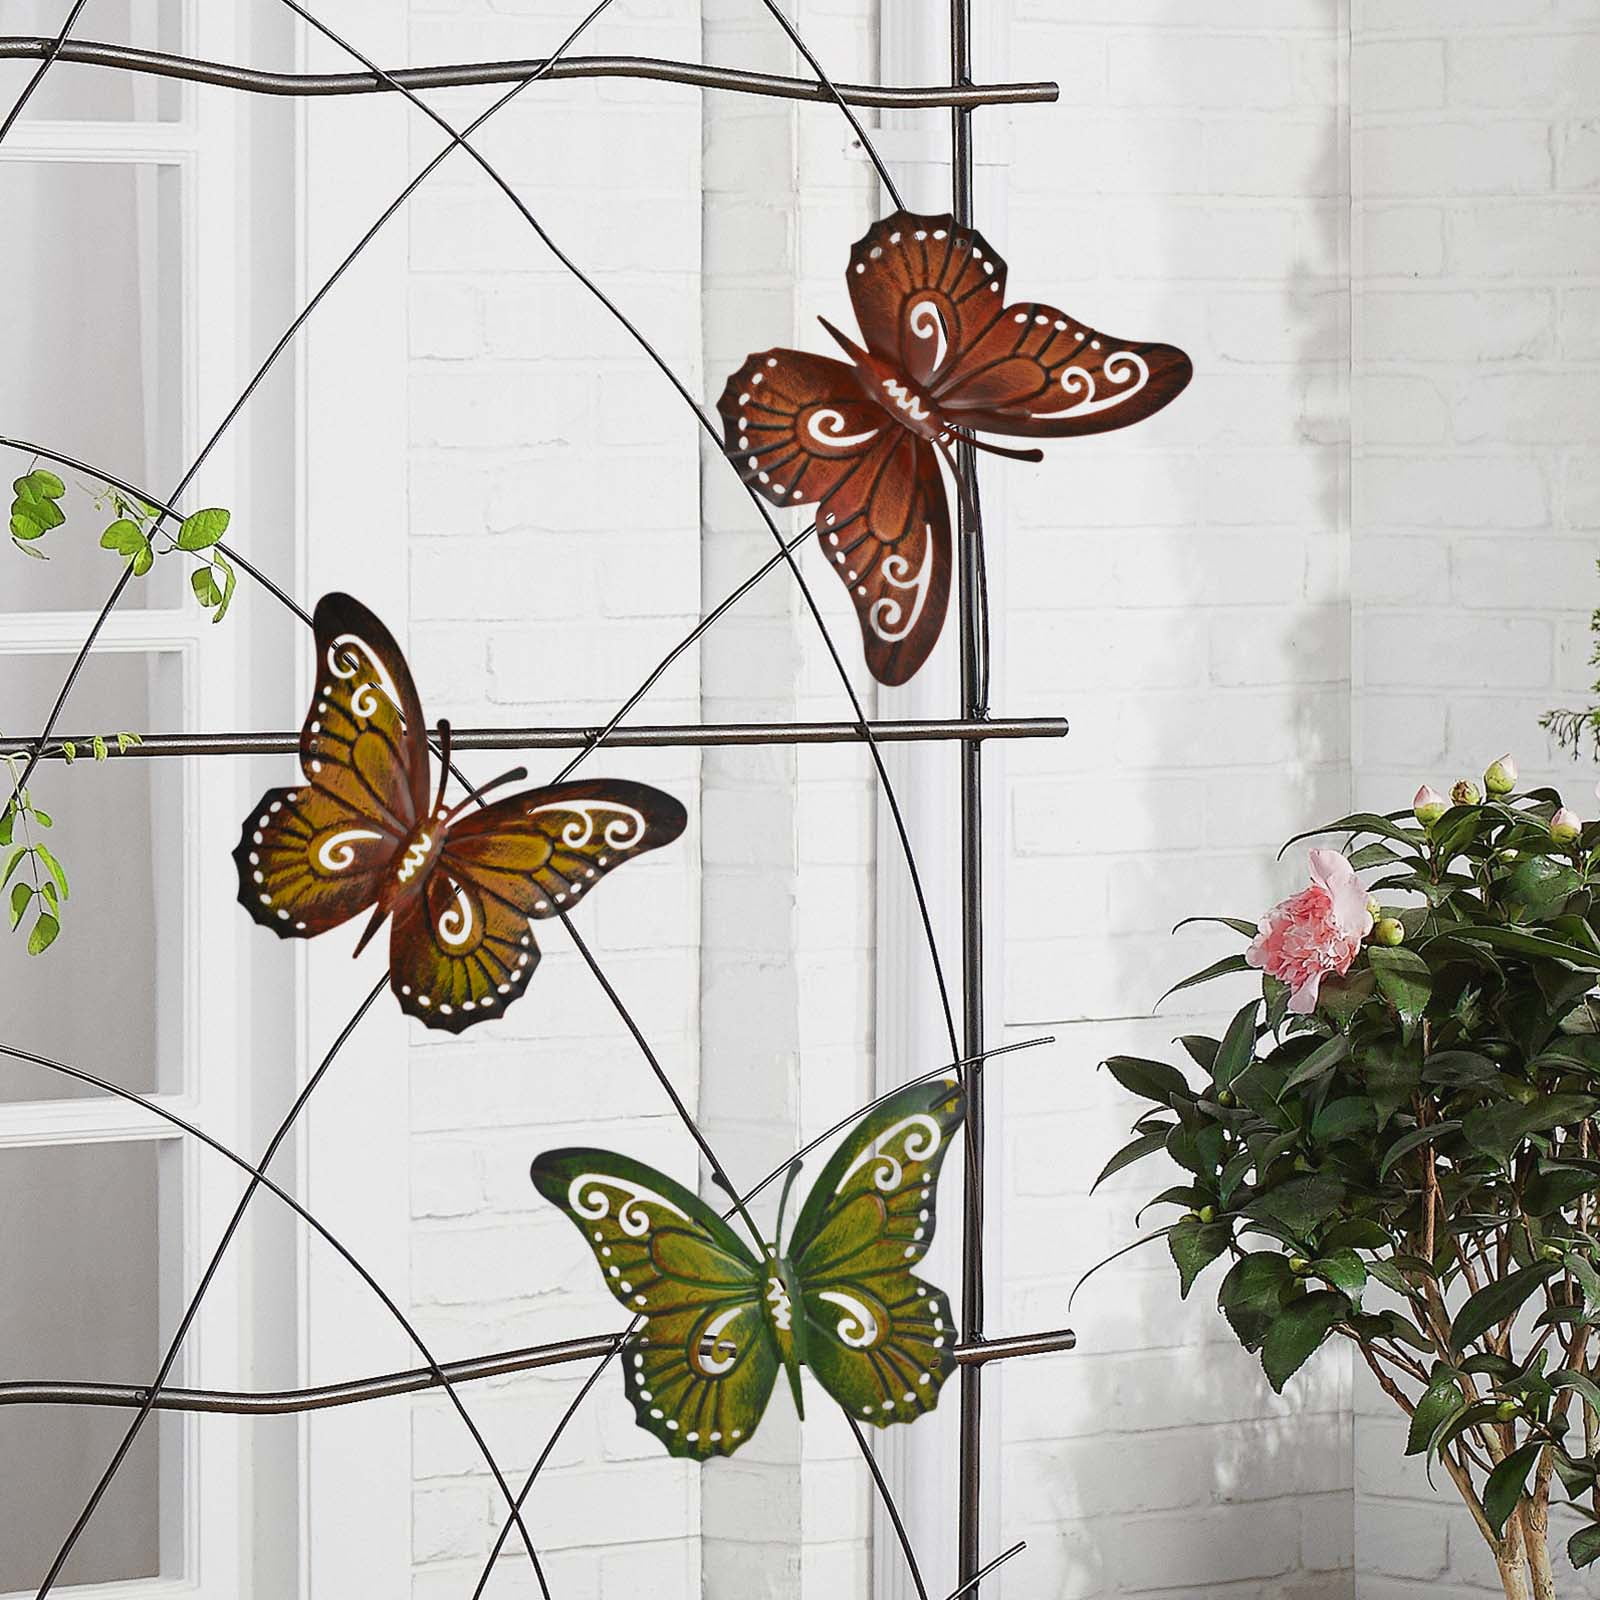 3D Metal Outdoor Wall Art Garden Decor Modern Steel Large Butterfly Accent USA 